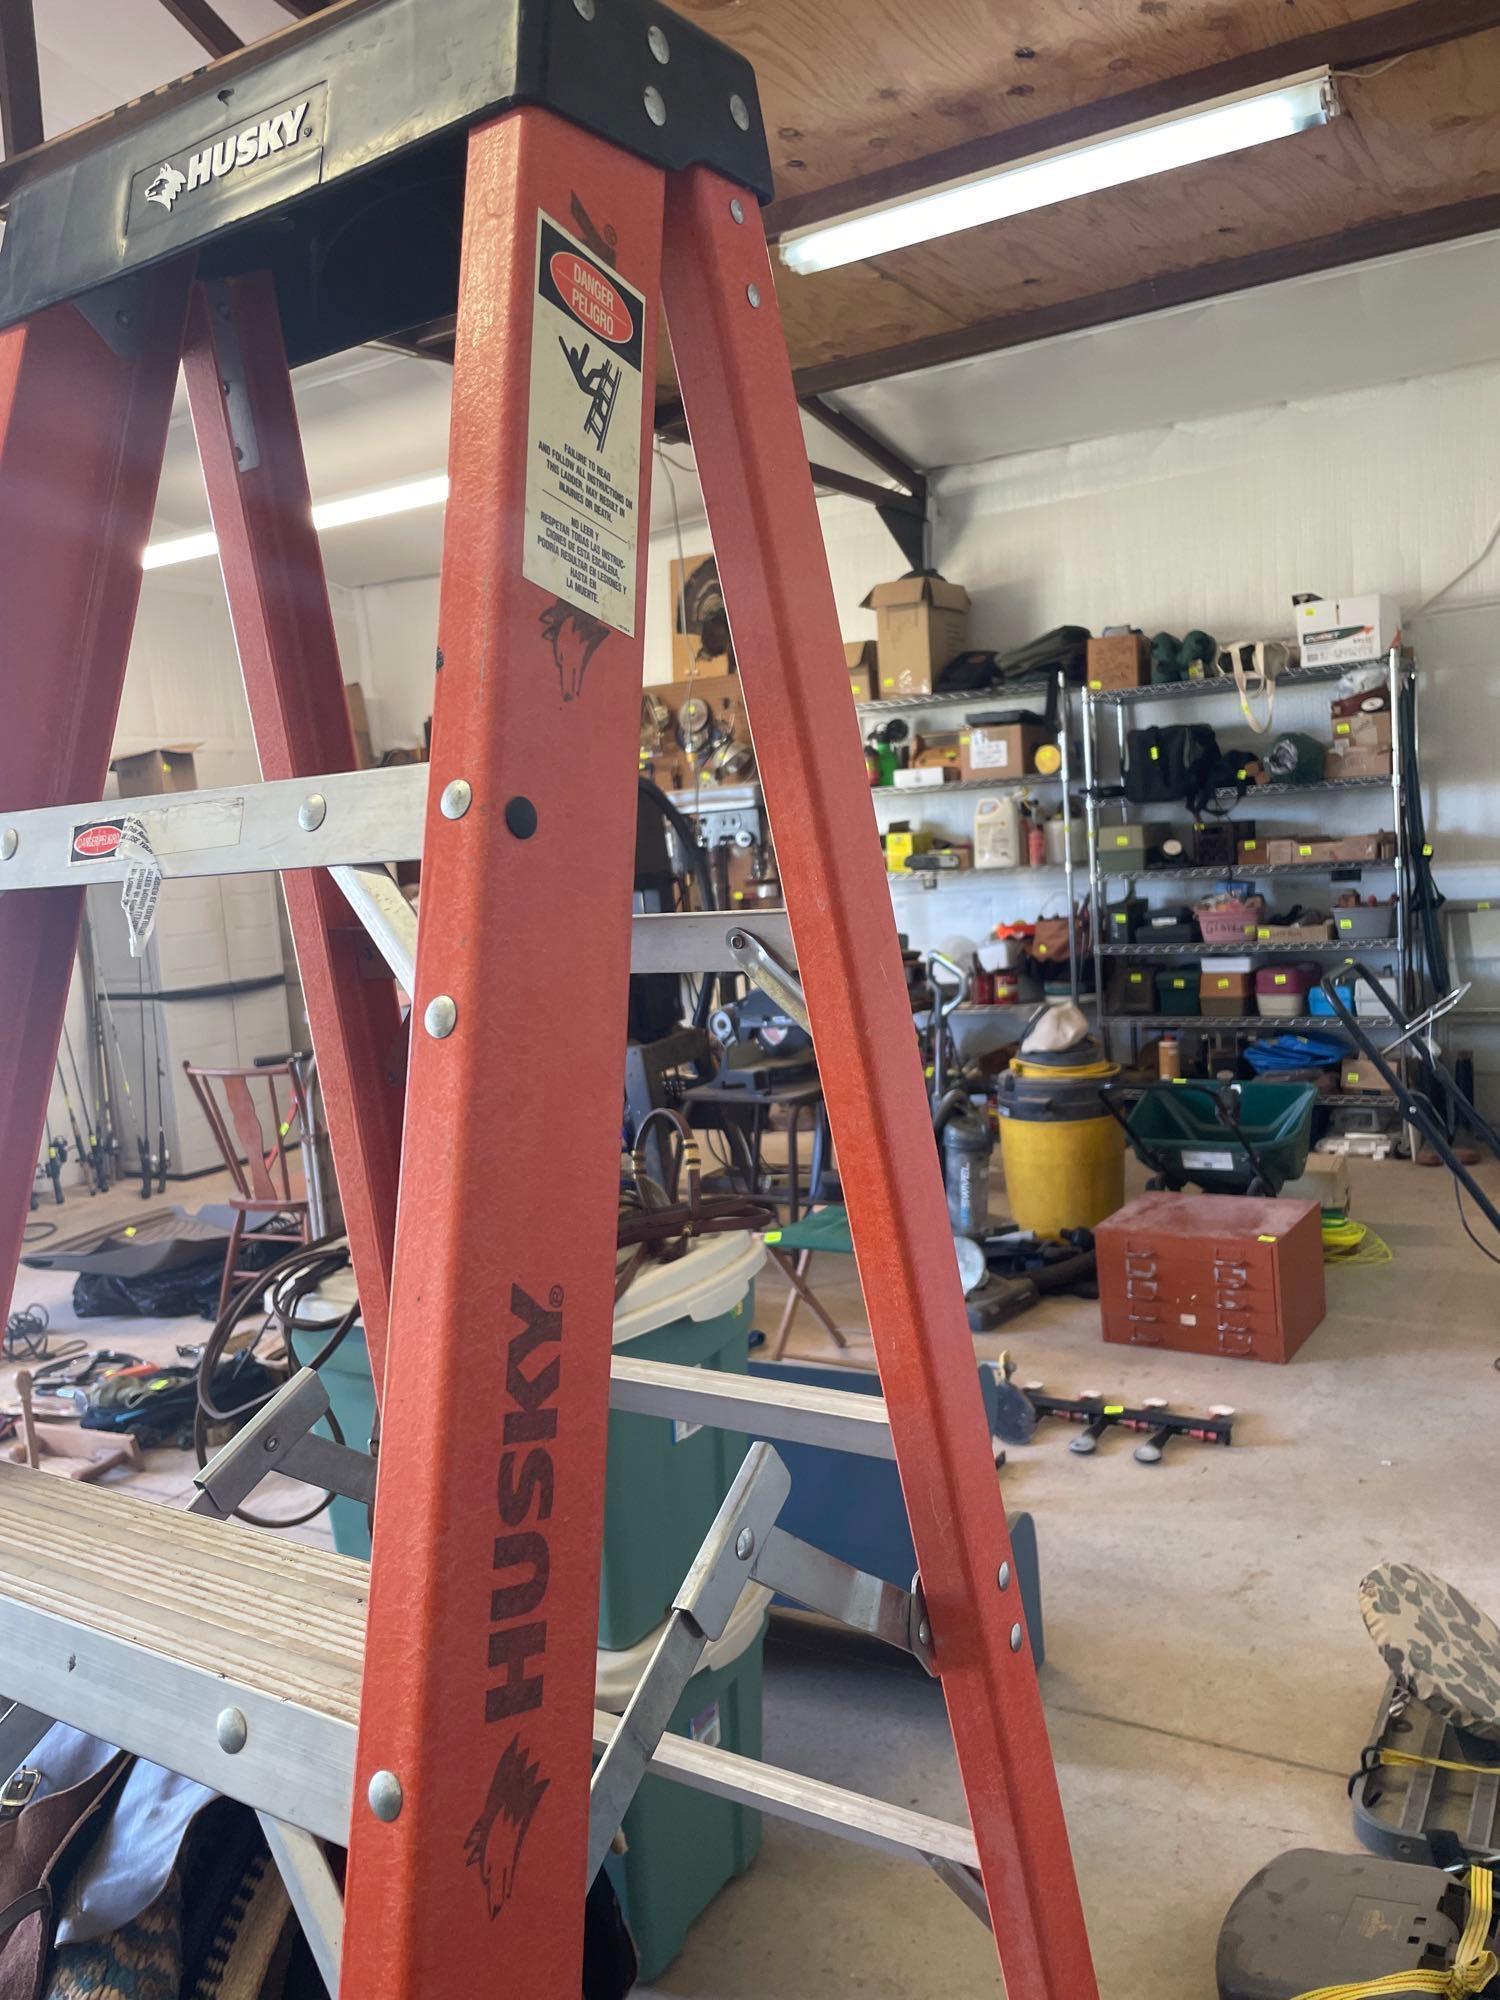 6 foot fiberglass a frame ladder